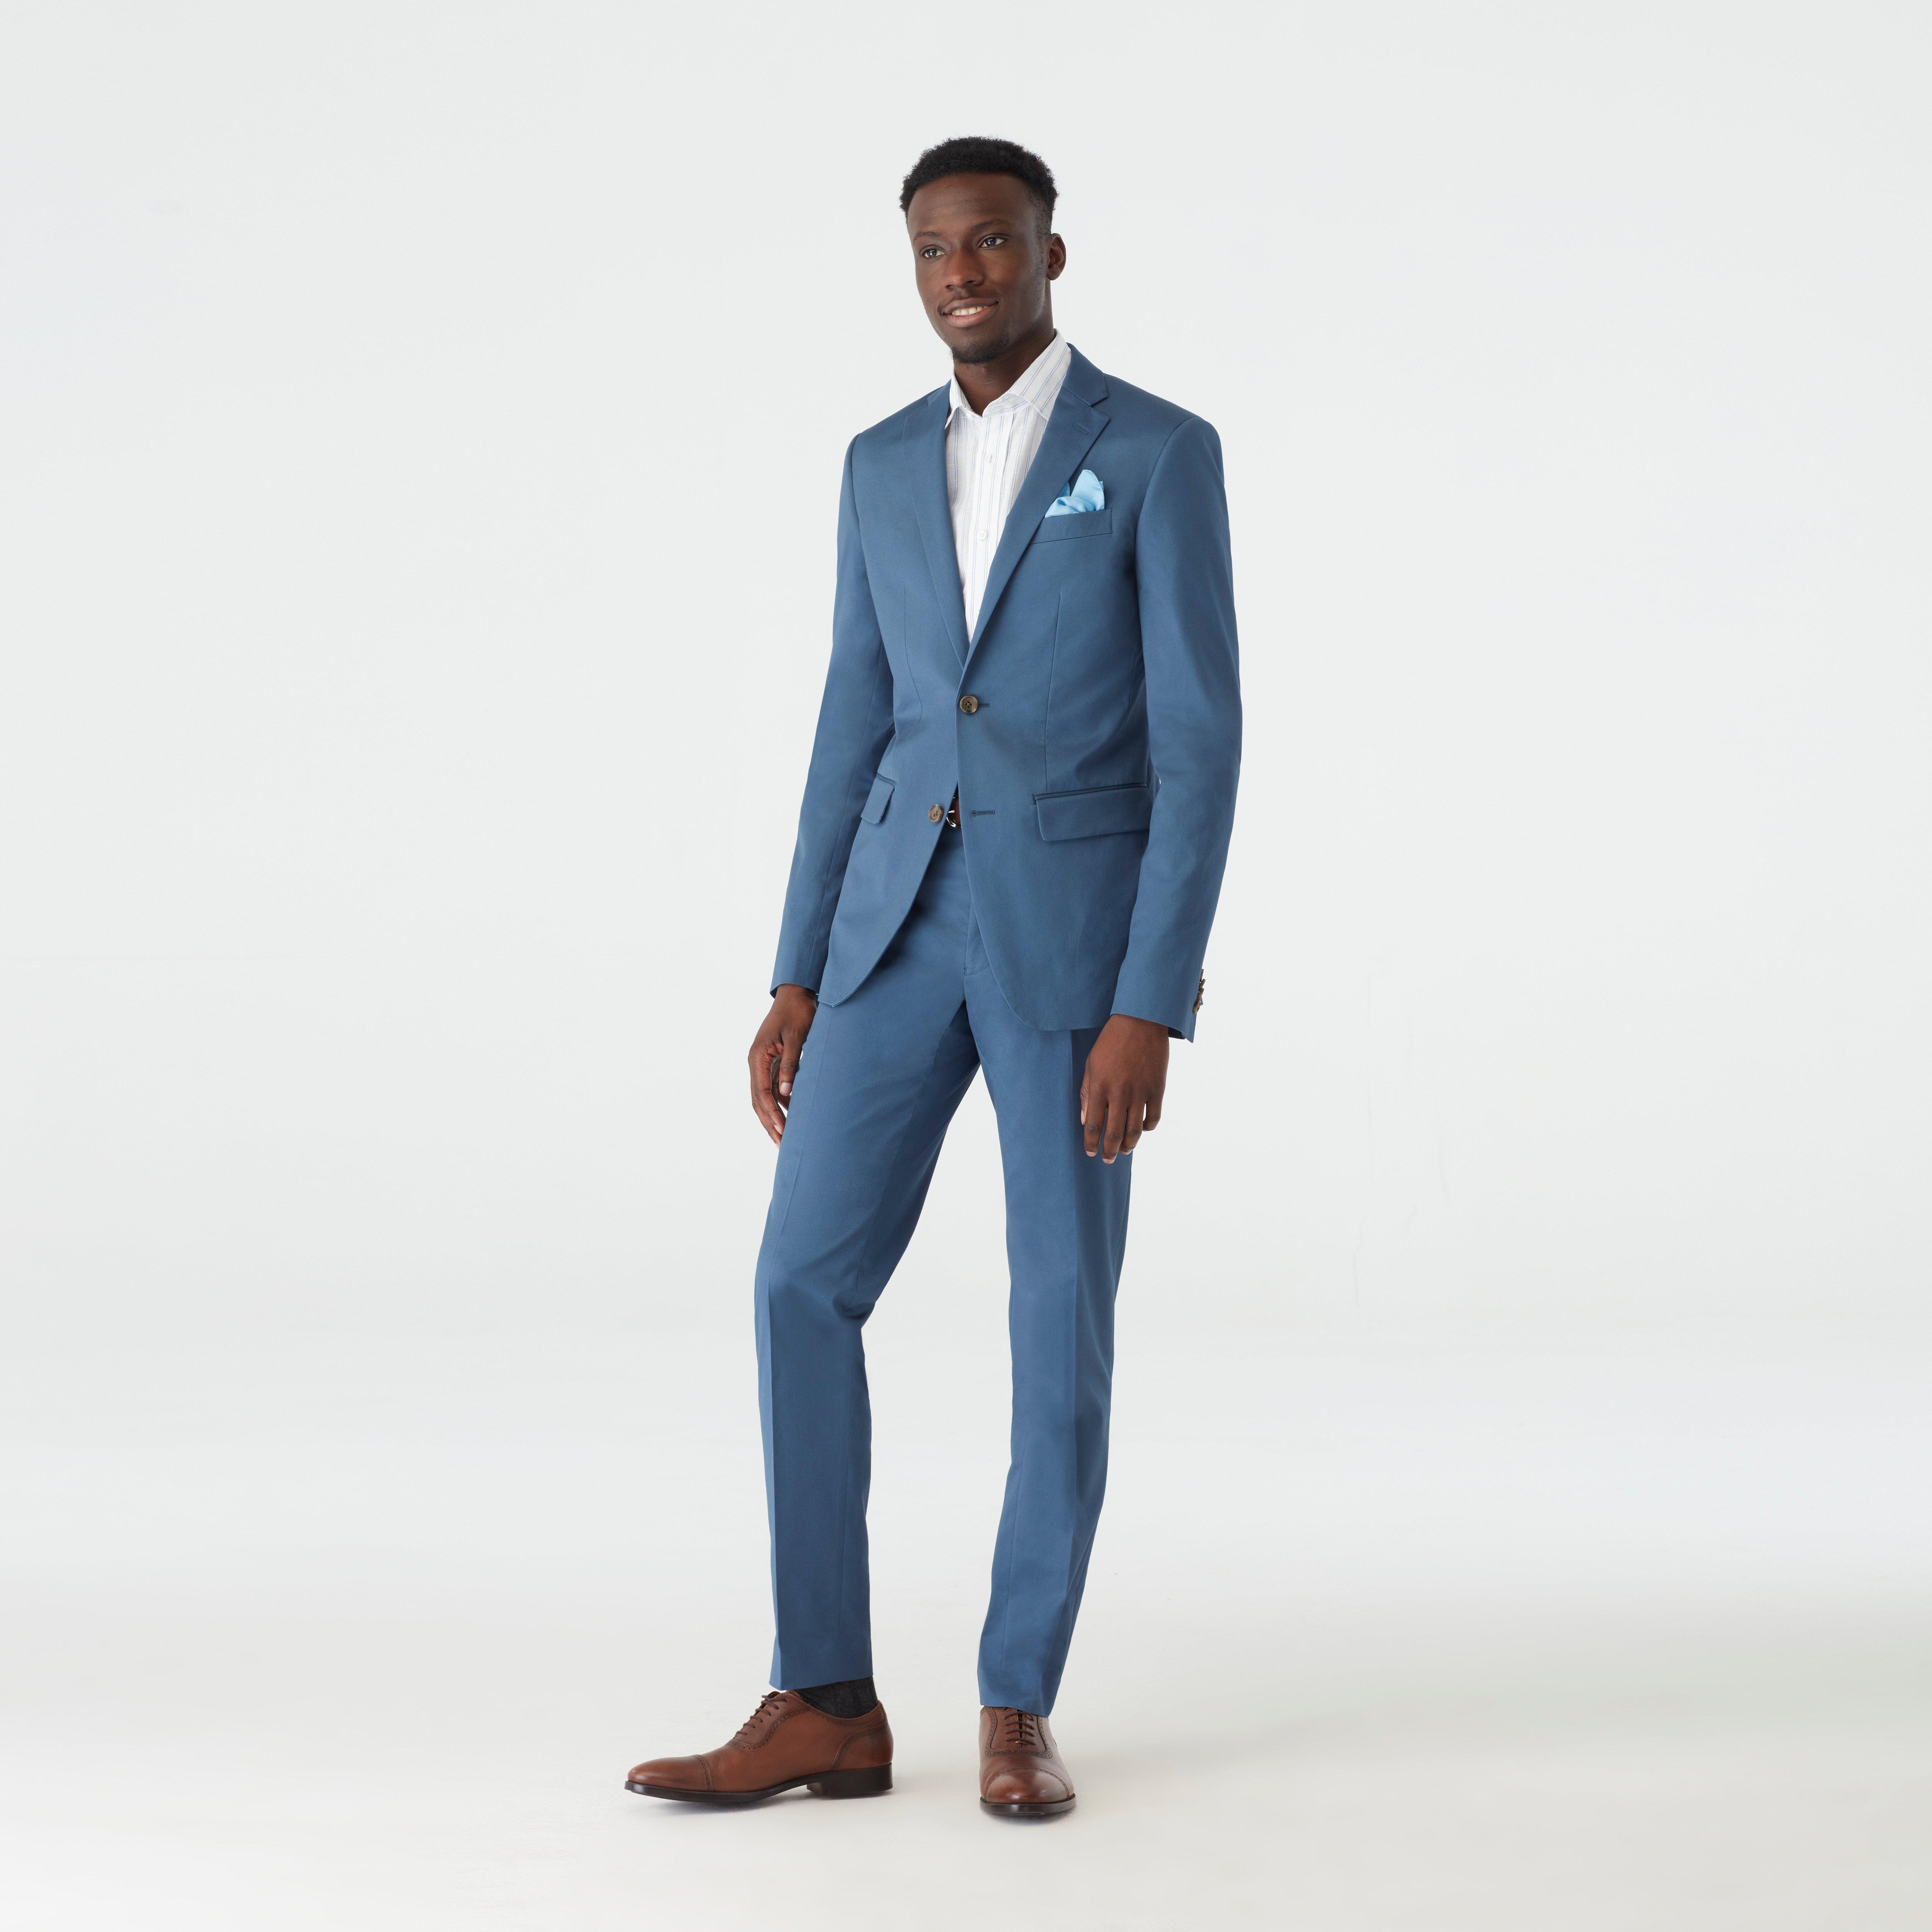 Blue Suits - Blue, Navy Blue & Indigo Blue Men's Suits